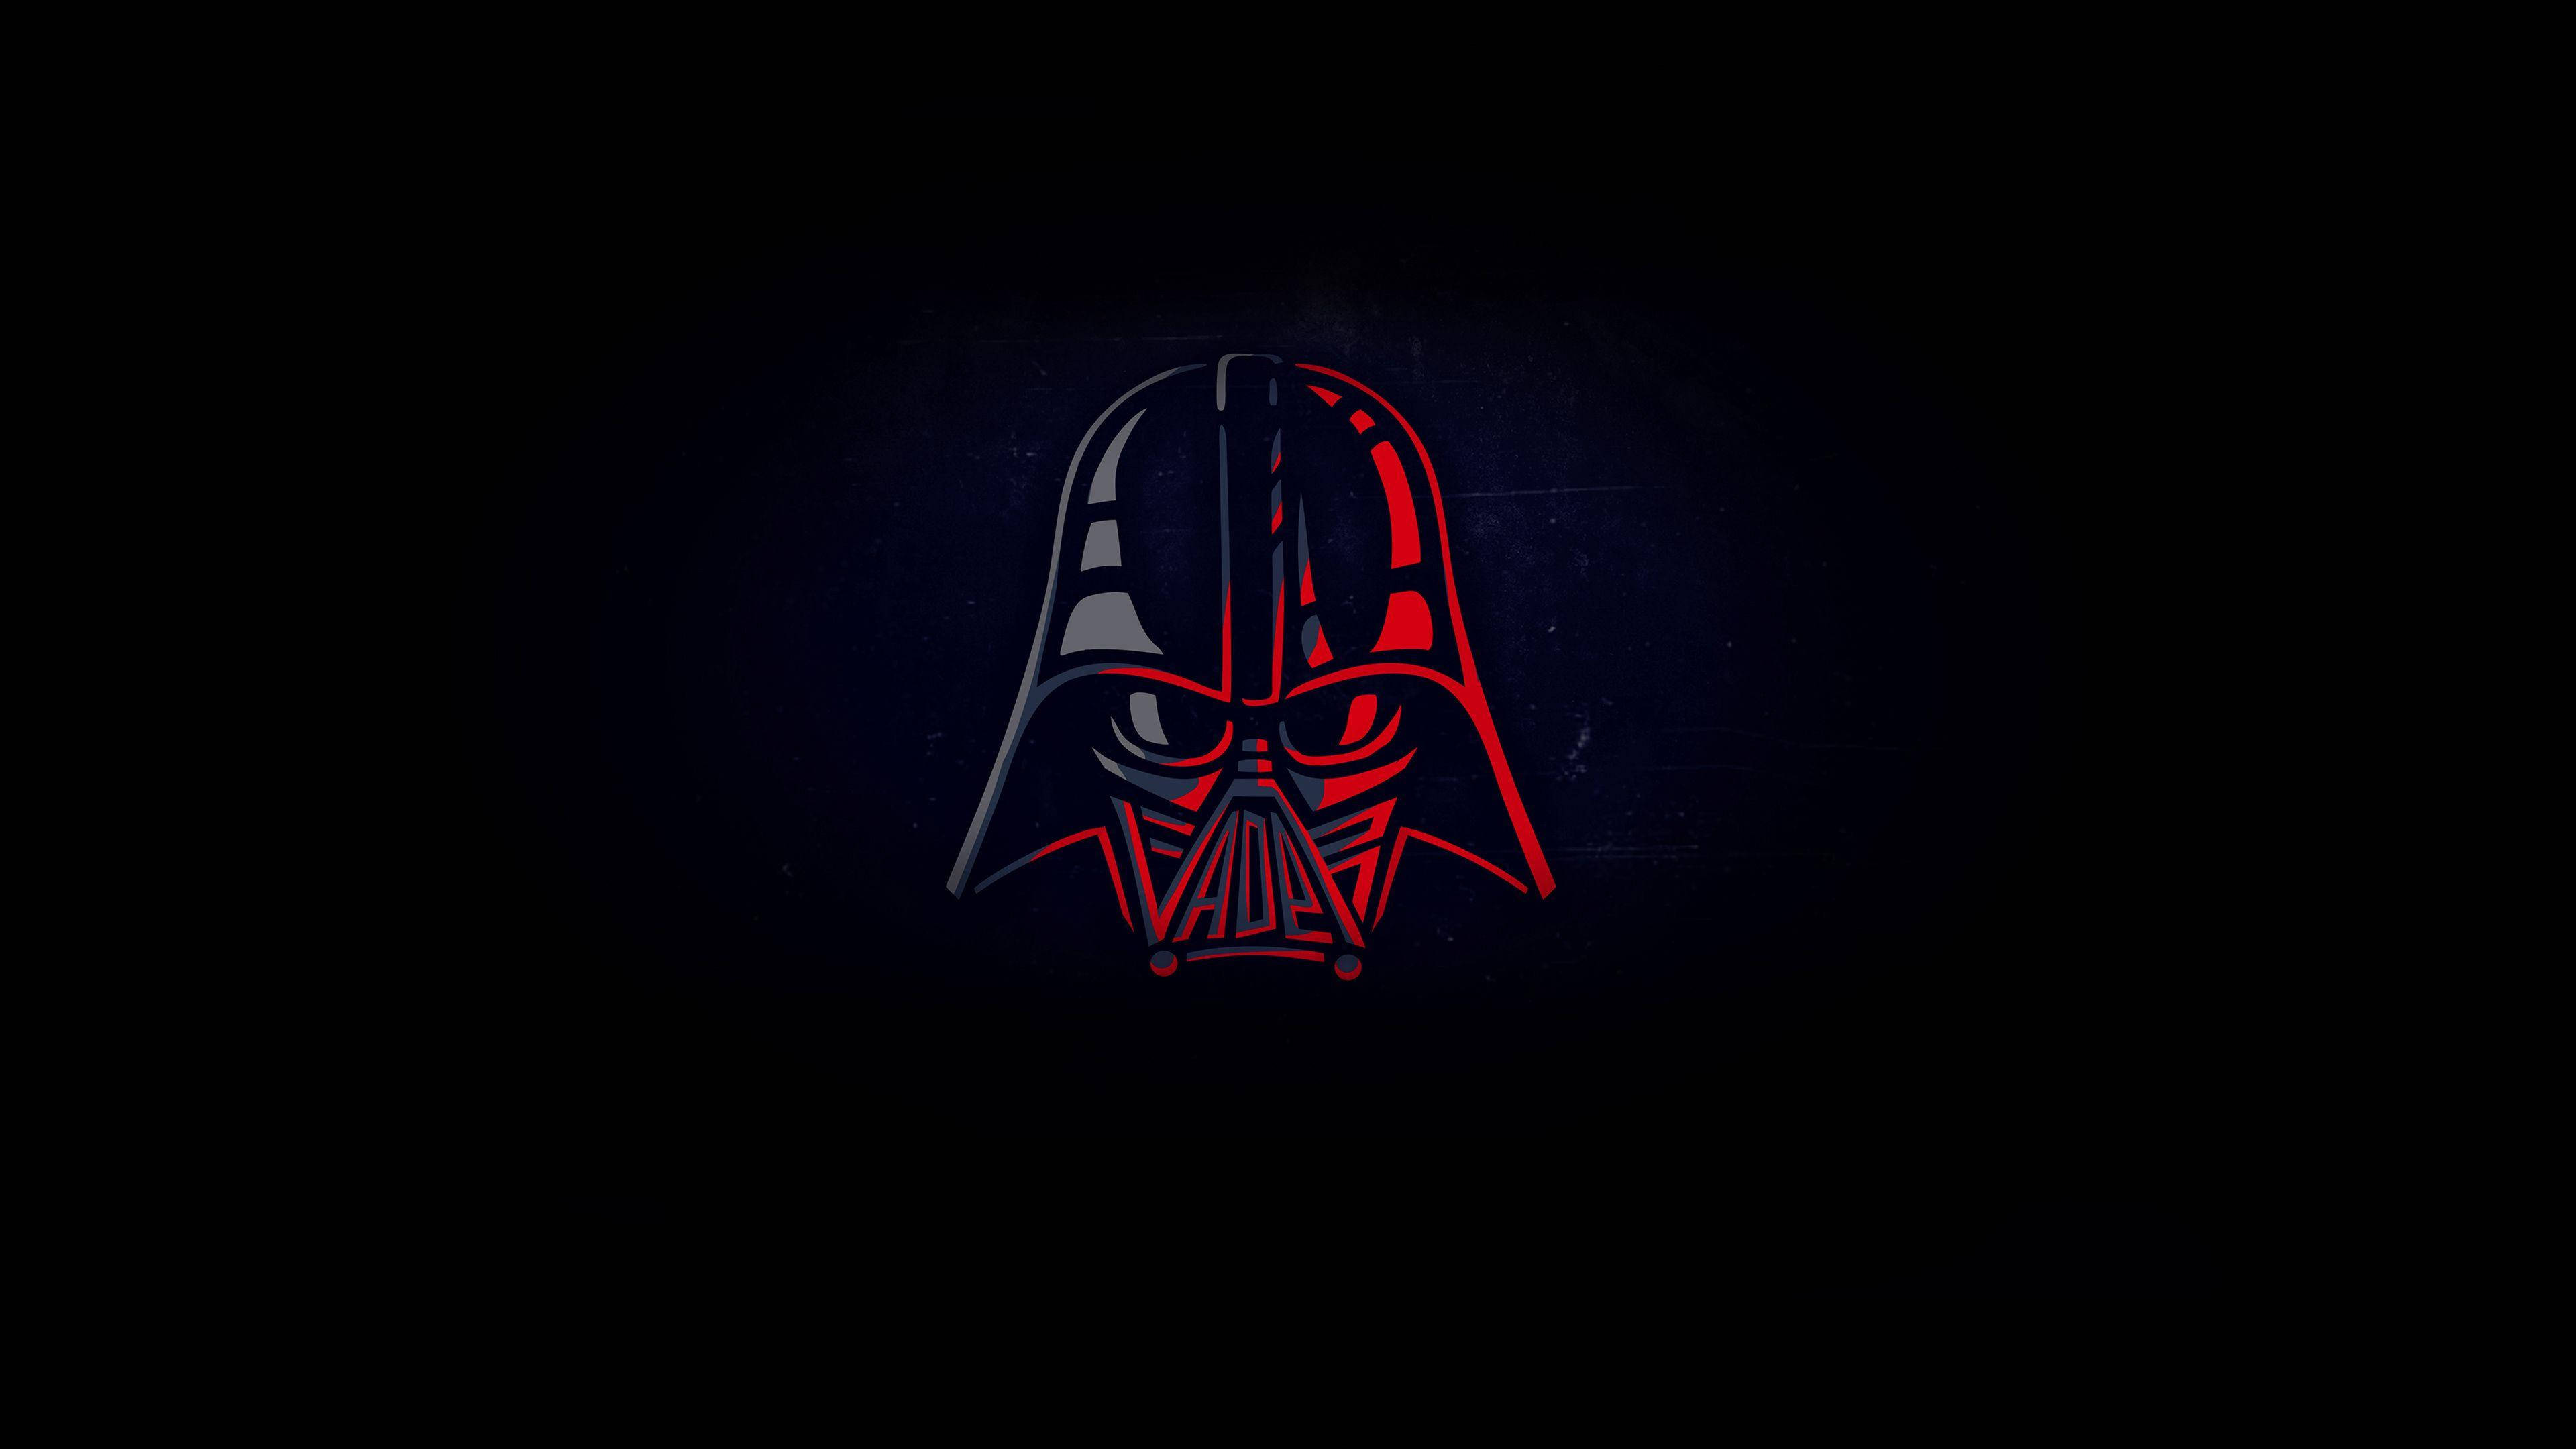 Darth Vaders Minimalist Star Wars Mask